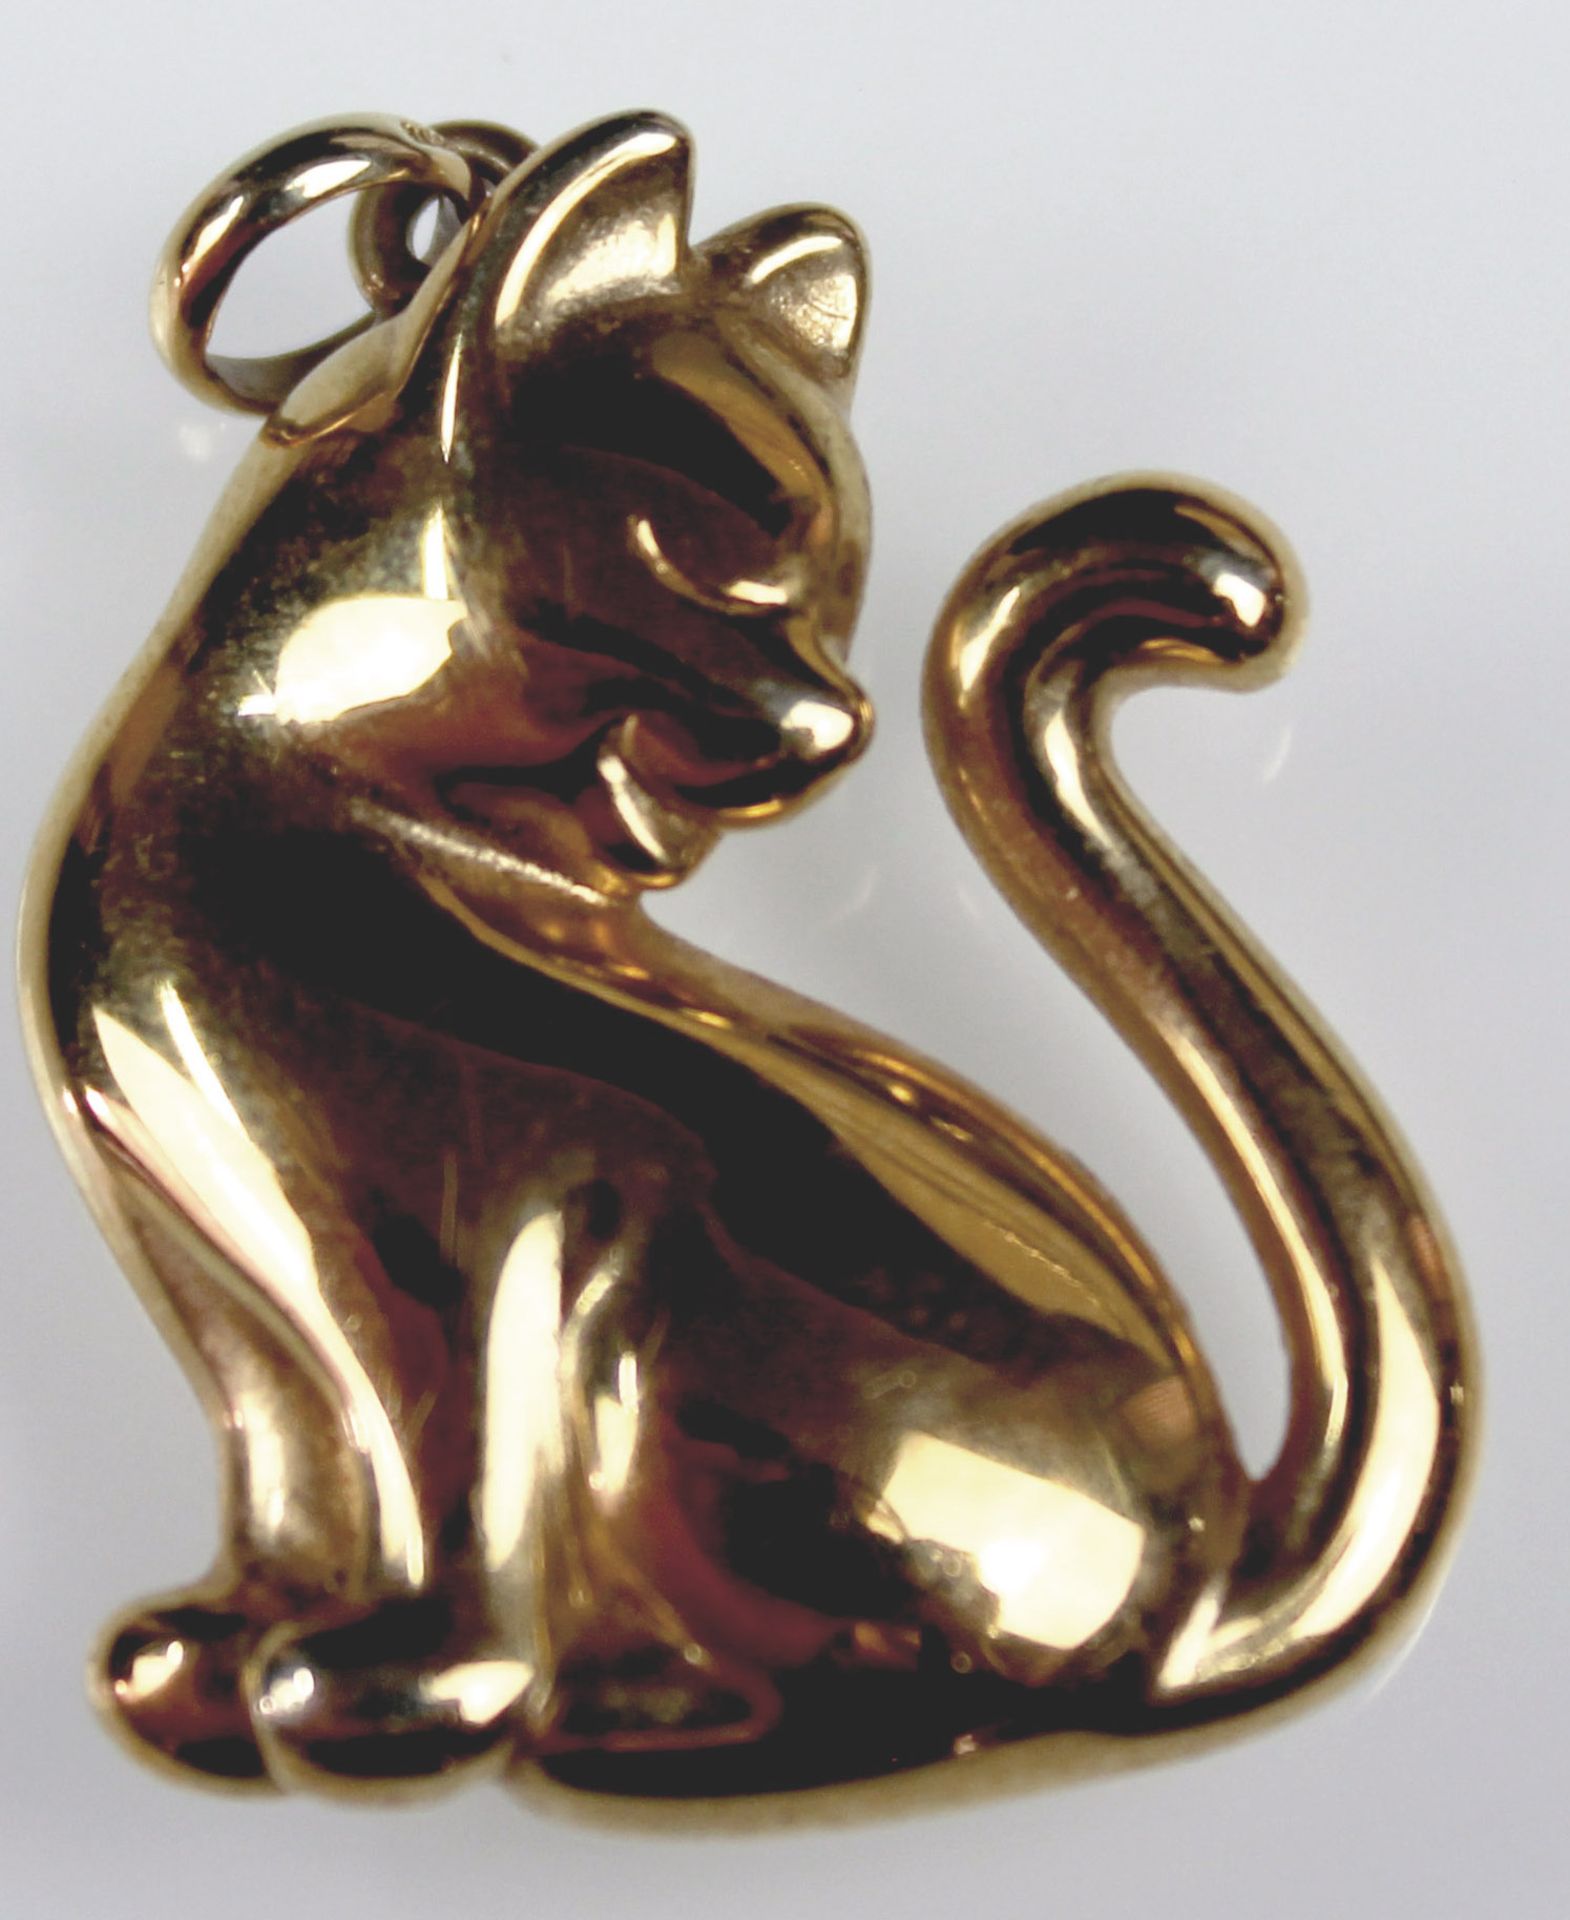 2 Ketten und ein Katzen - Anhänger Gold 585.29,3 Gramm Gesamtgewicht. Kette bis circa 50 cm lang.2 - Image 5 of 11